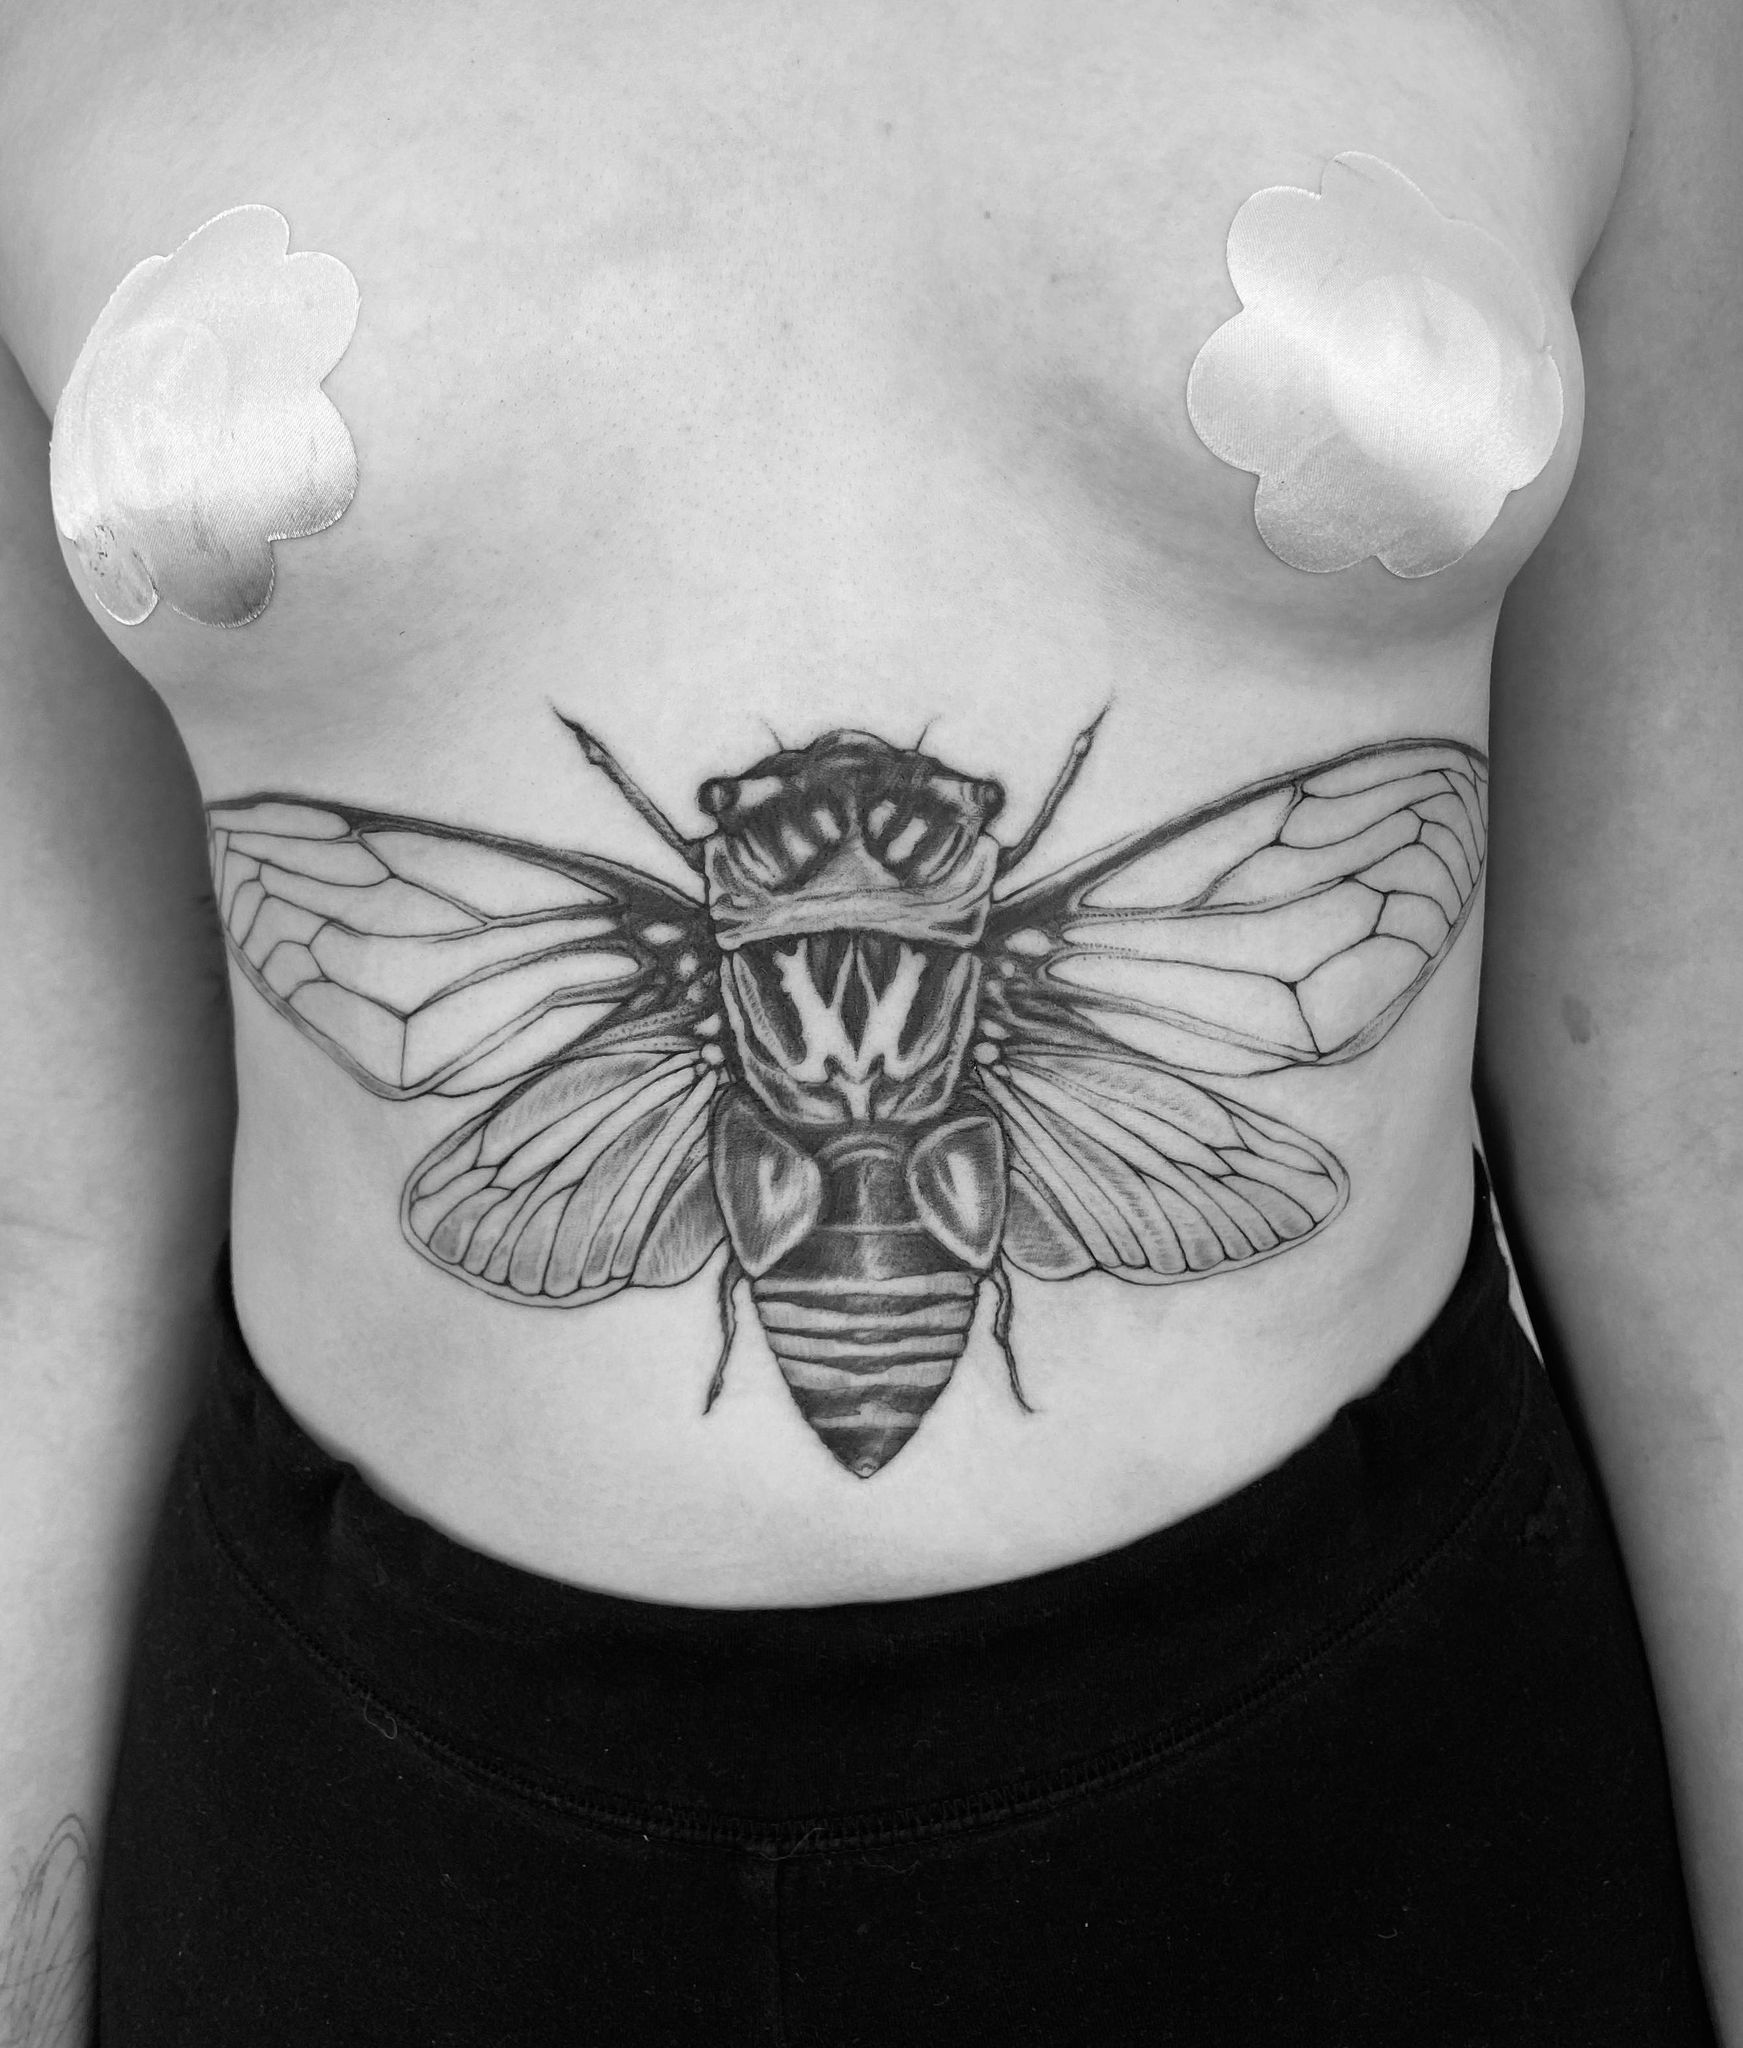 Cicada tattoo Stomach tattoo